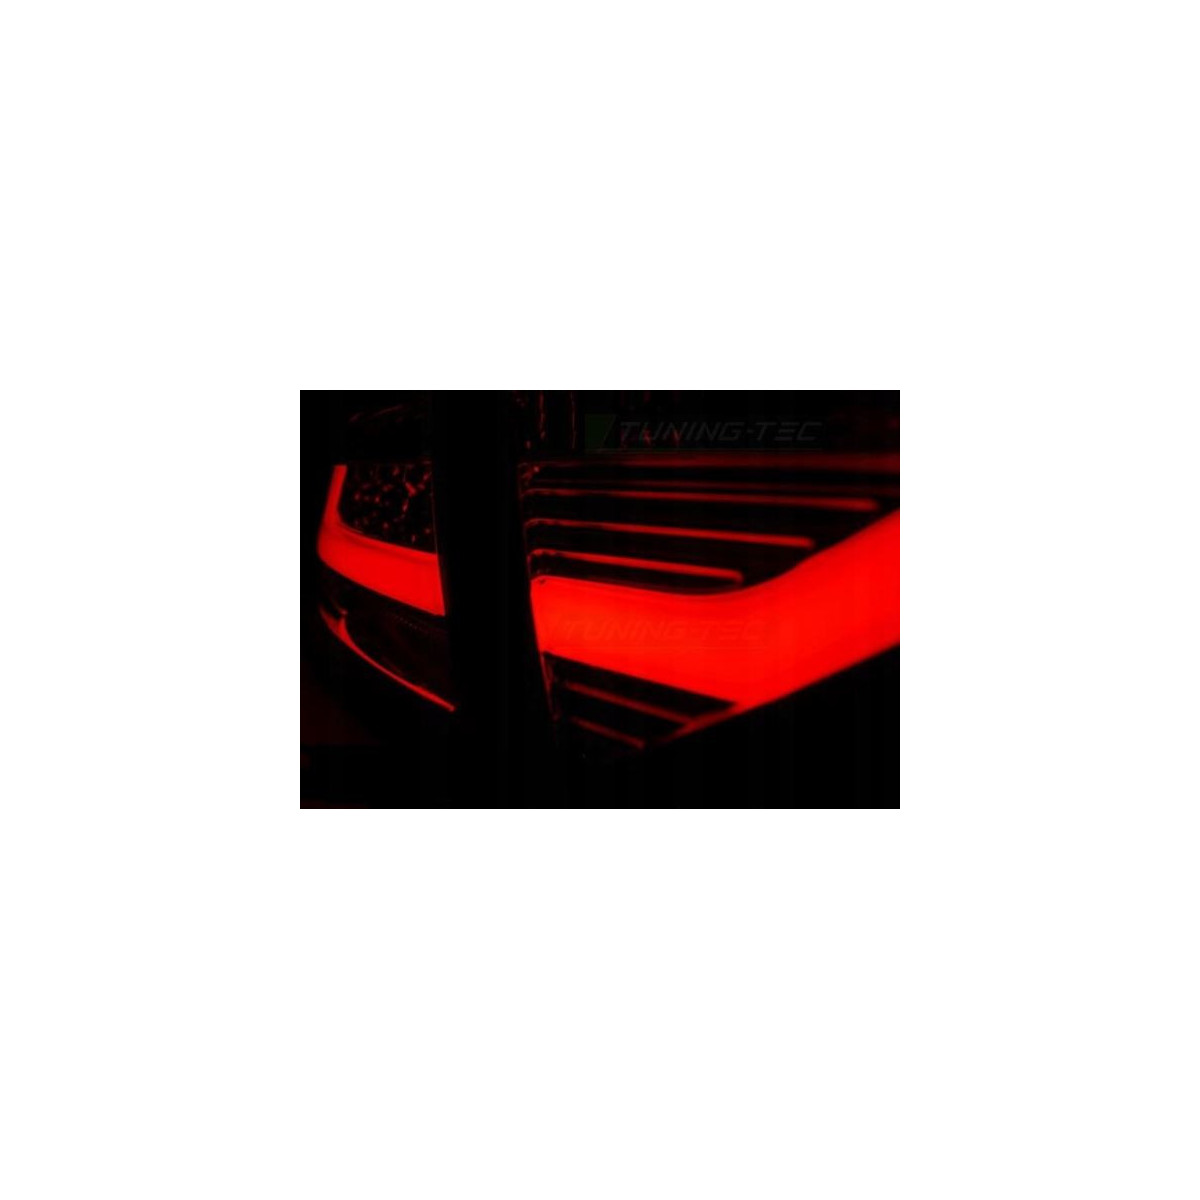 LAMPY AUDI A5 07-06.11 COUPE RED SMOKE LED BAR